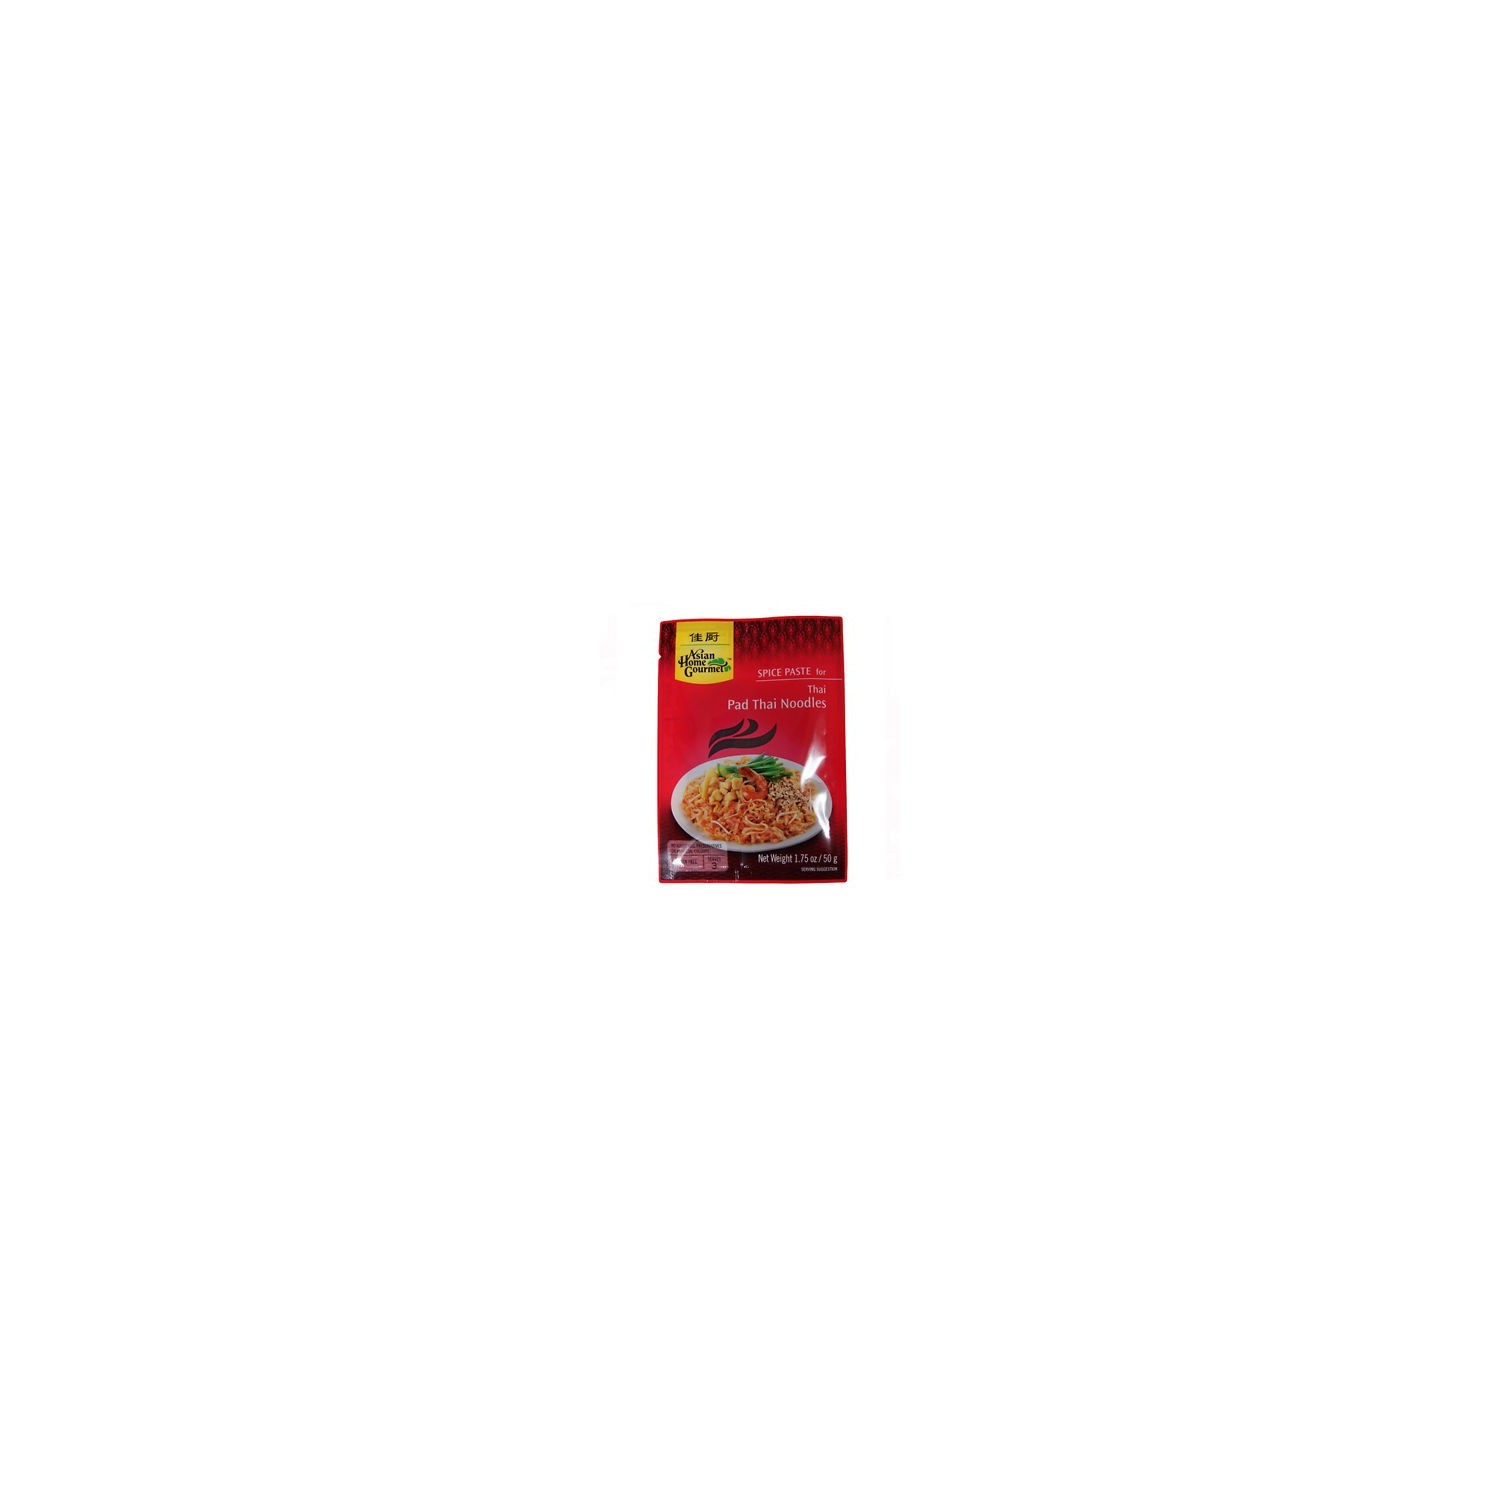 Spice paste pad thai noodles - 0015205500408